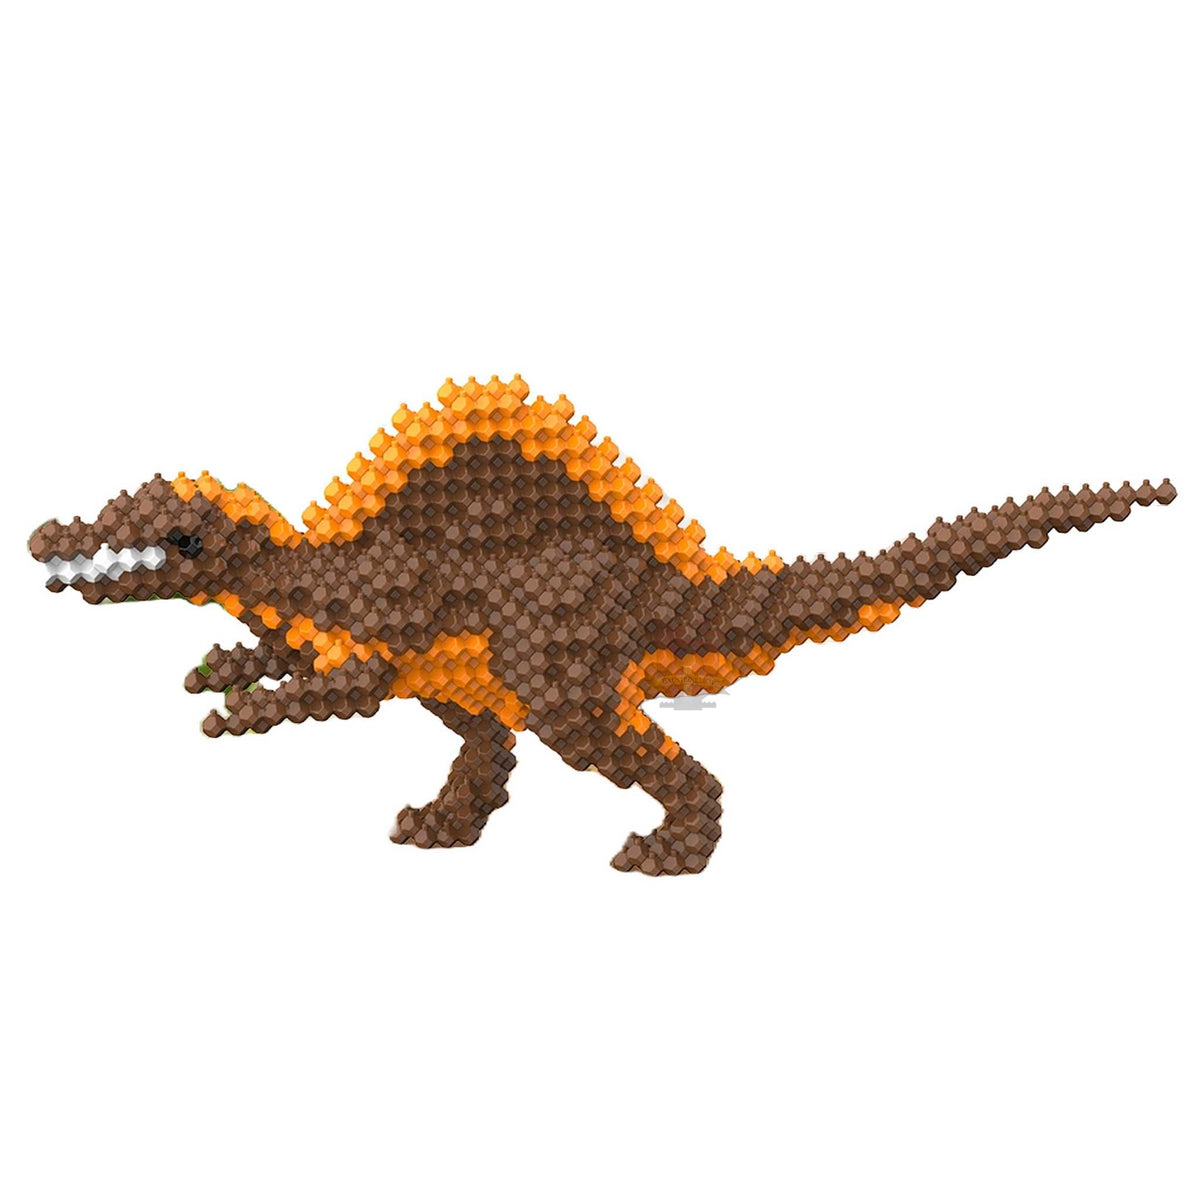 57003 - Spinosaurus (Kadele)